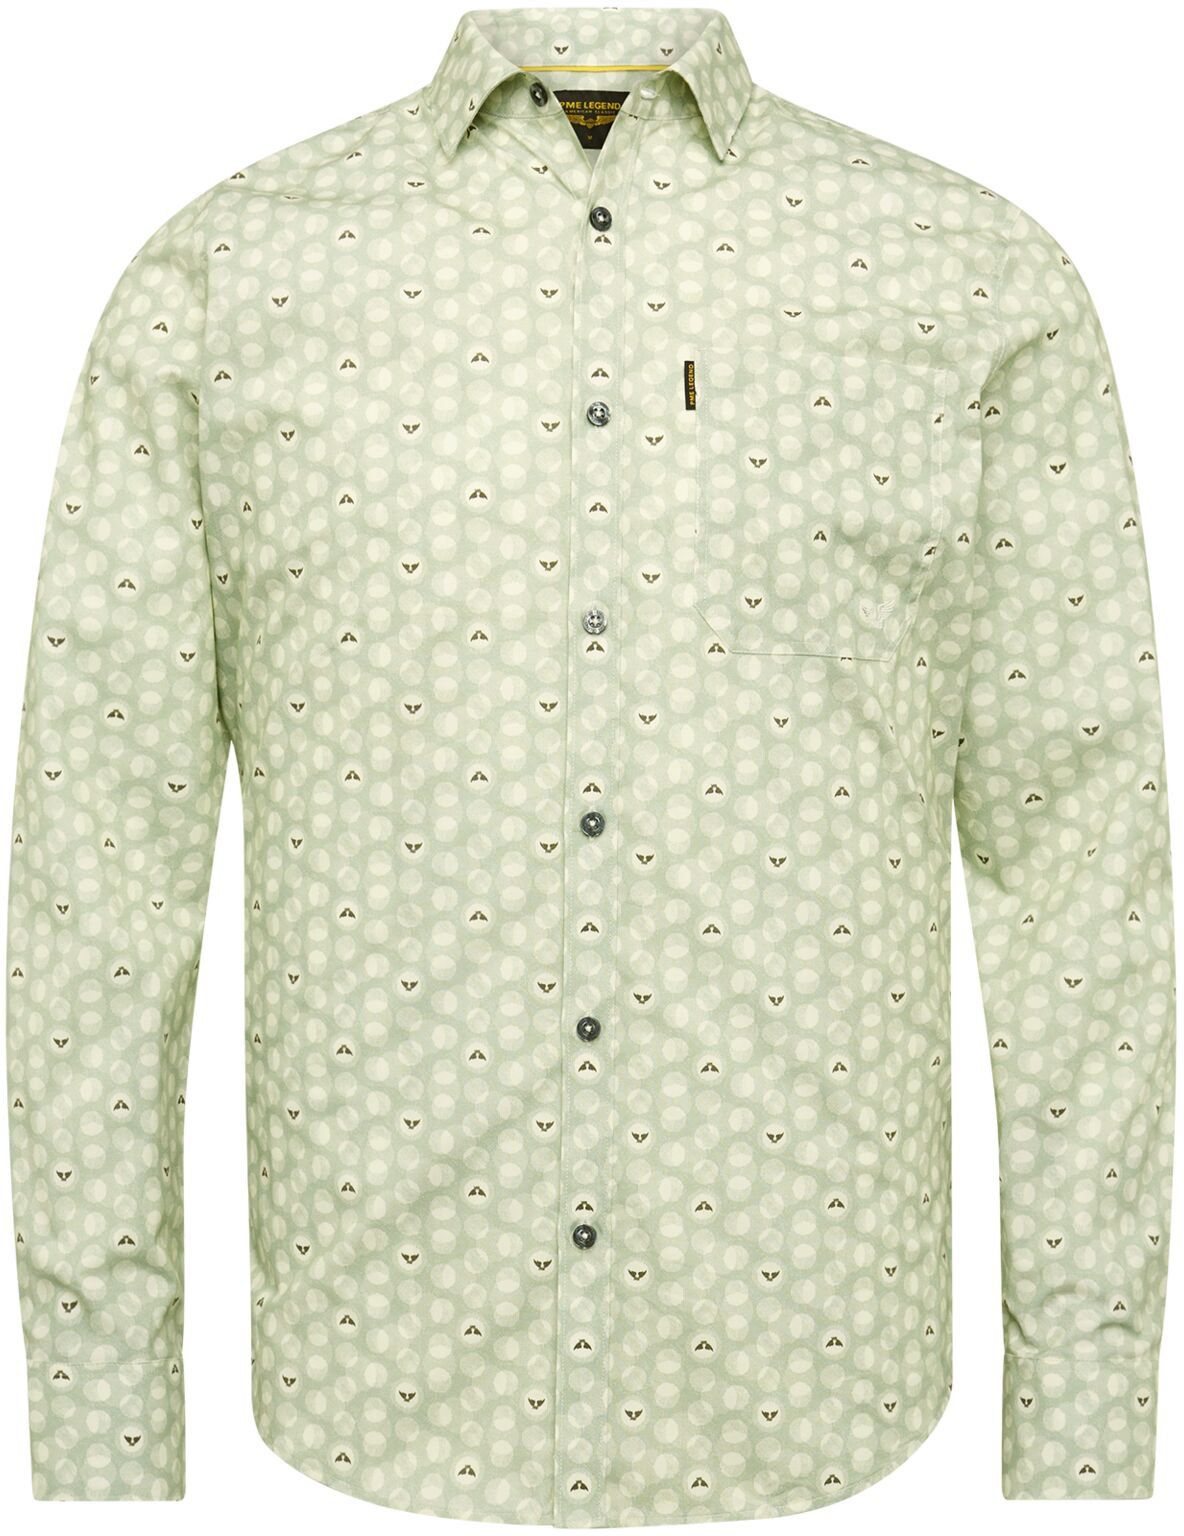 PME Legend Shirt Print Green size 3XL